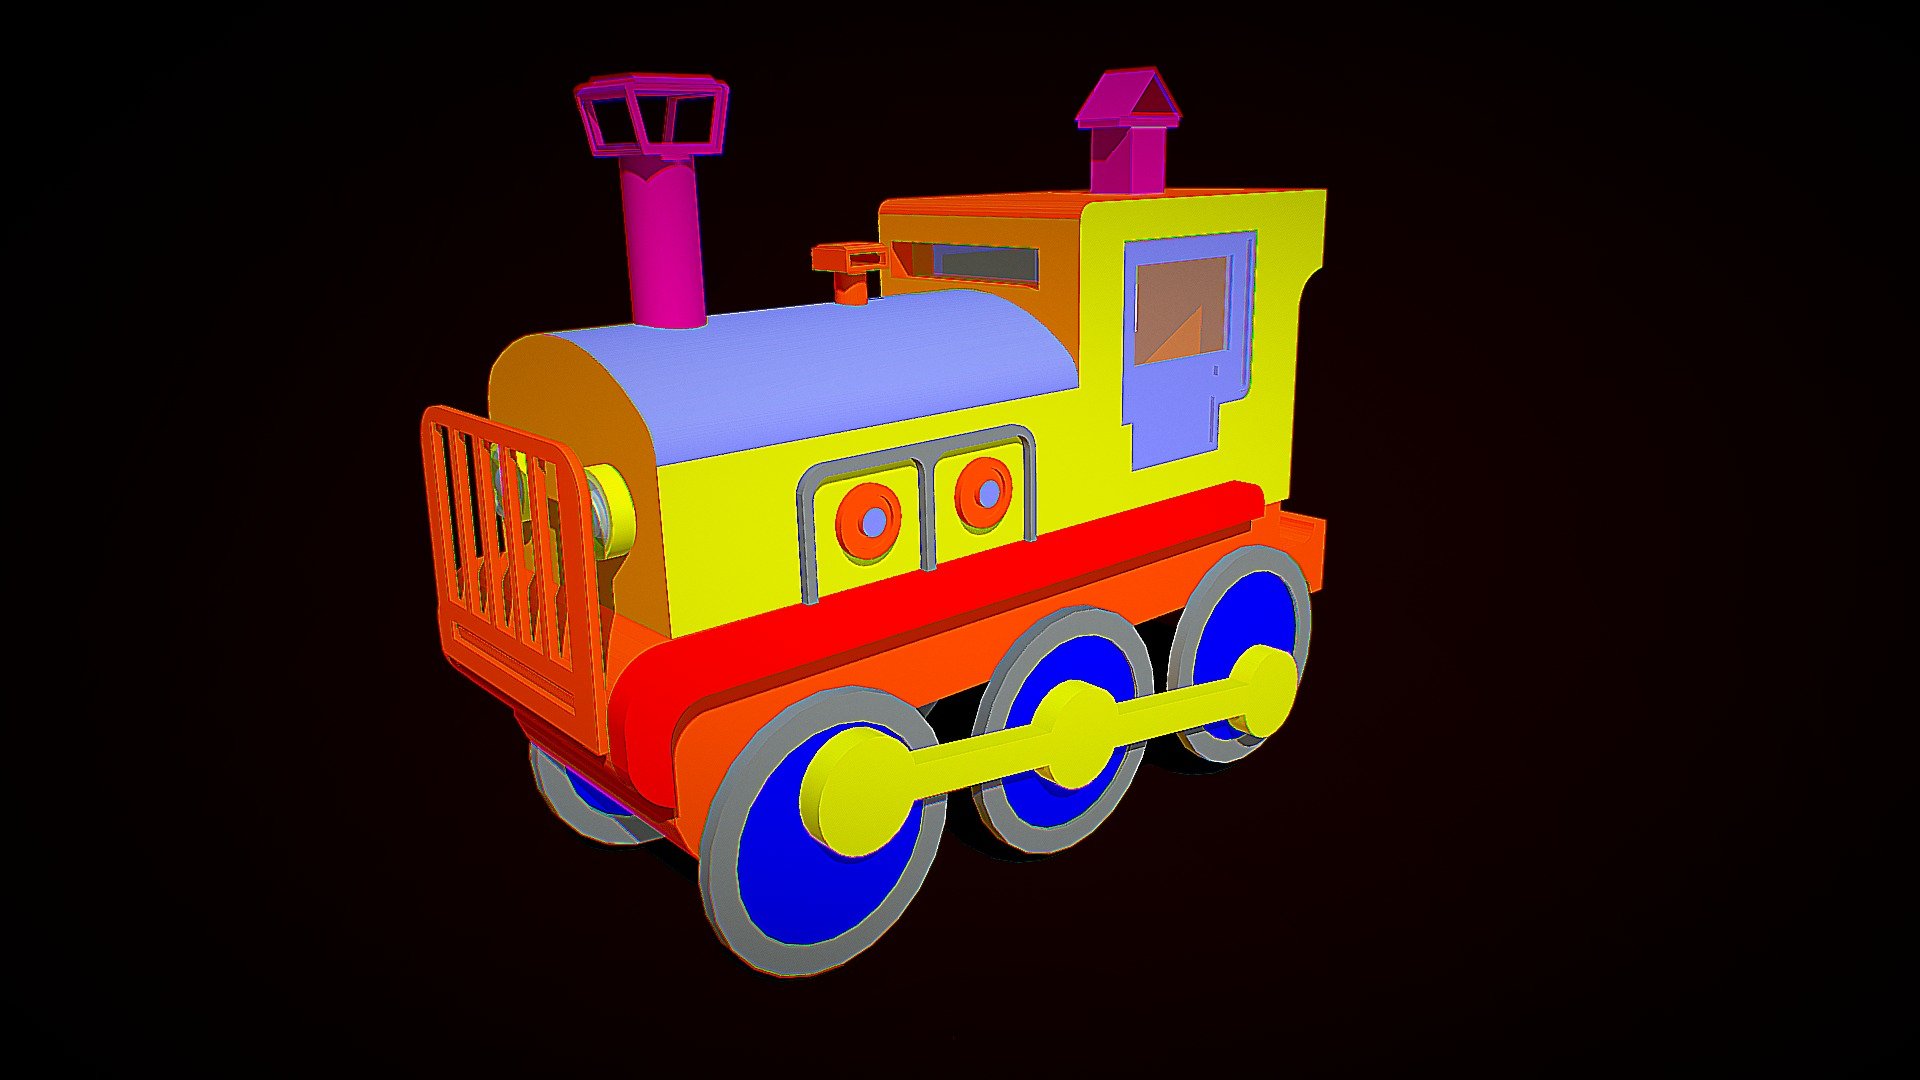 Locomotive (Train) Cartoon - 3D model by Sahra Studios (@sahrastudios)  [8cdad07]